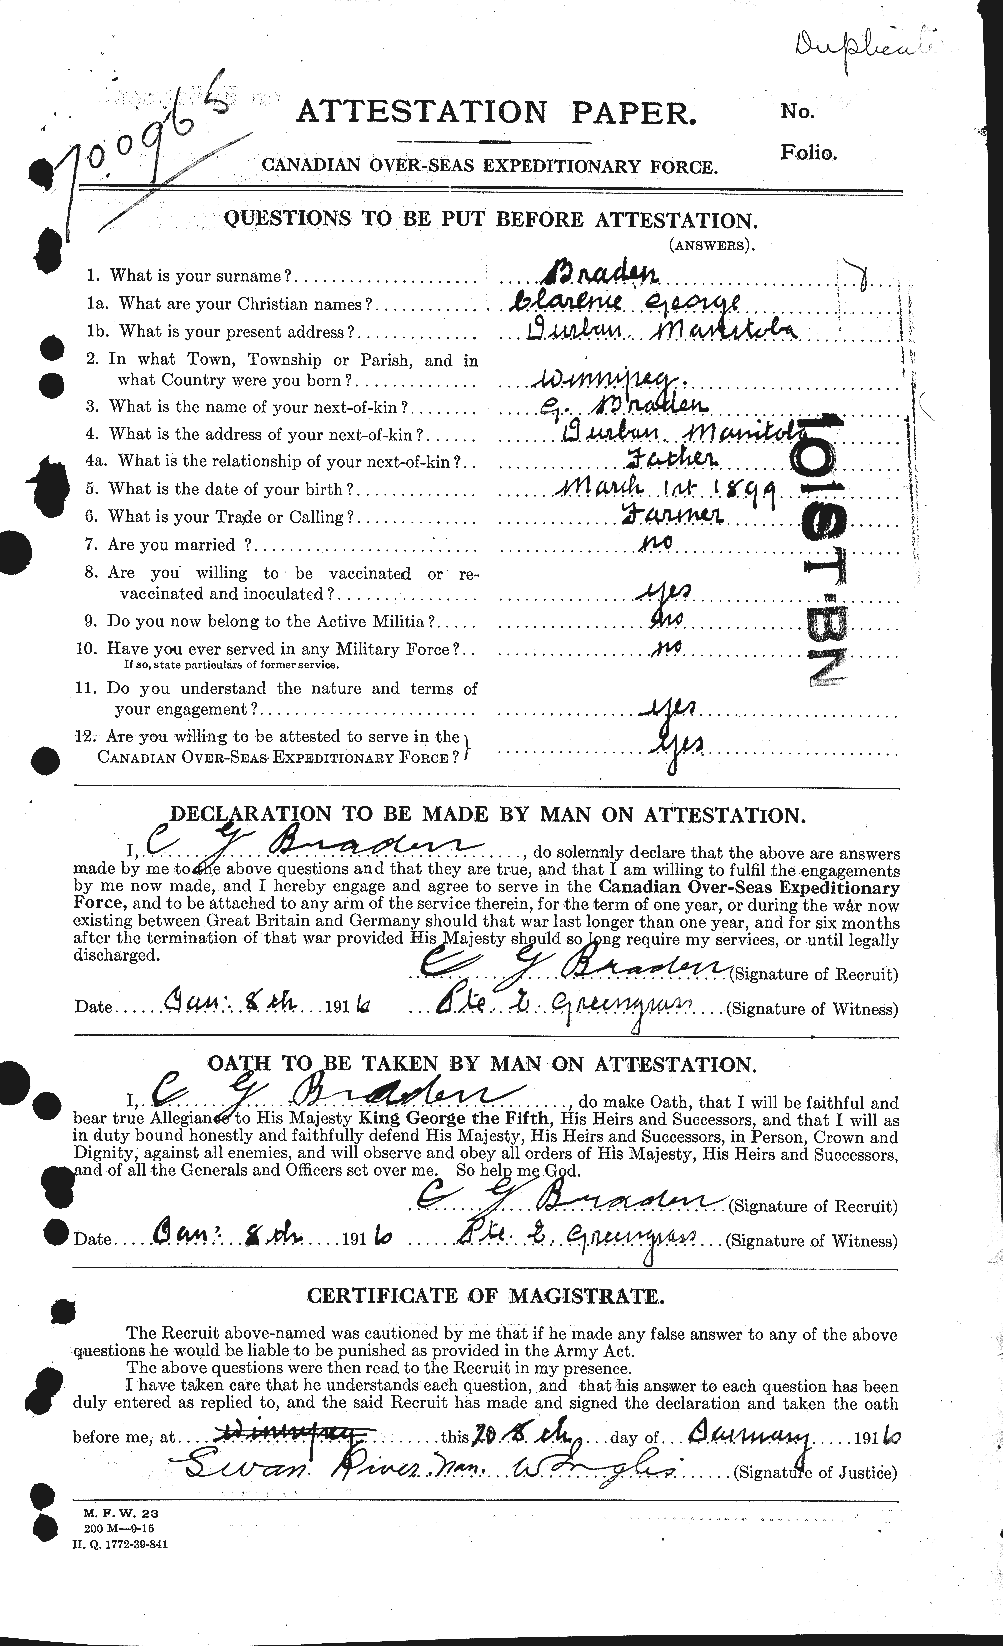 Dossiers du Personnel de la Première Guerre mondiale - CEC 258575a